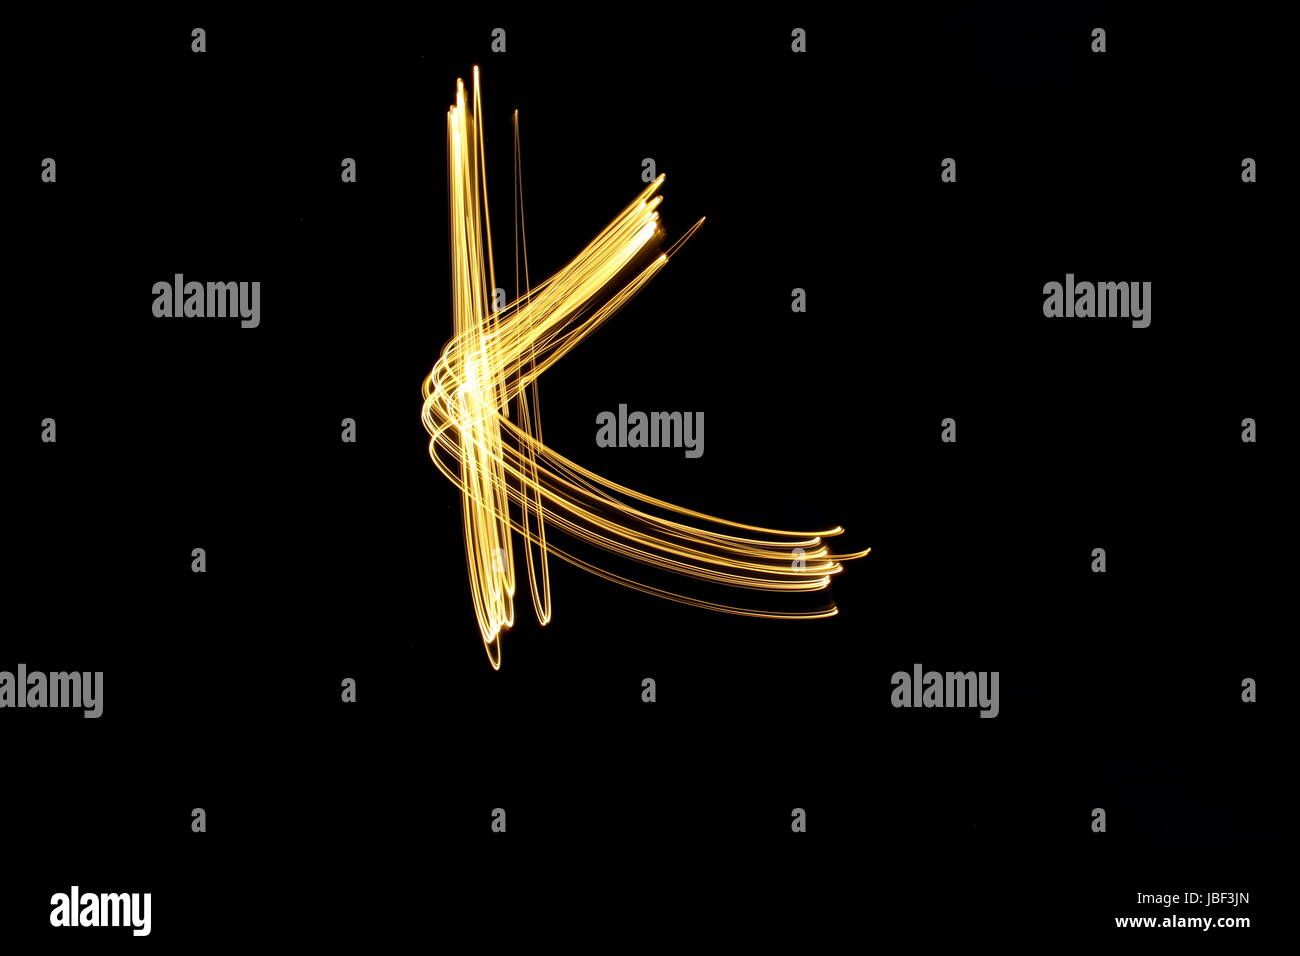 Neon Letter K Banque d'image et photos - Alamy